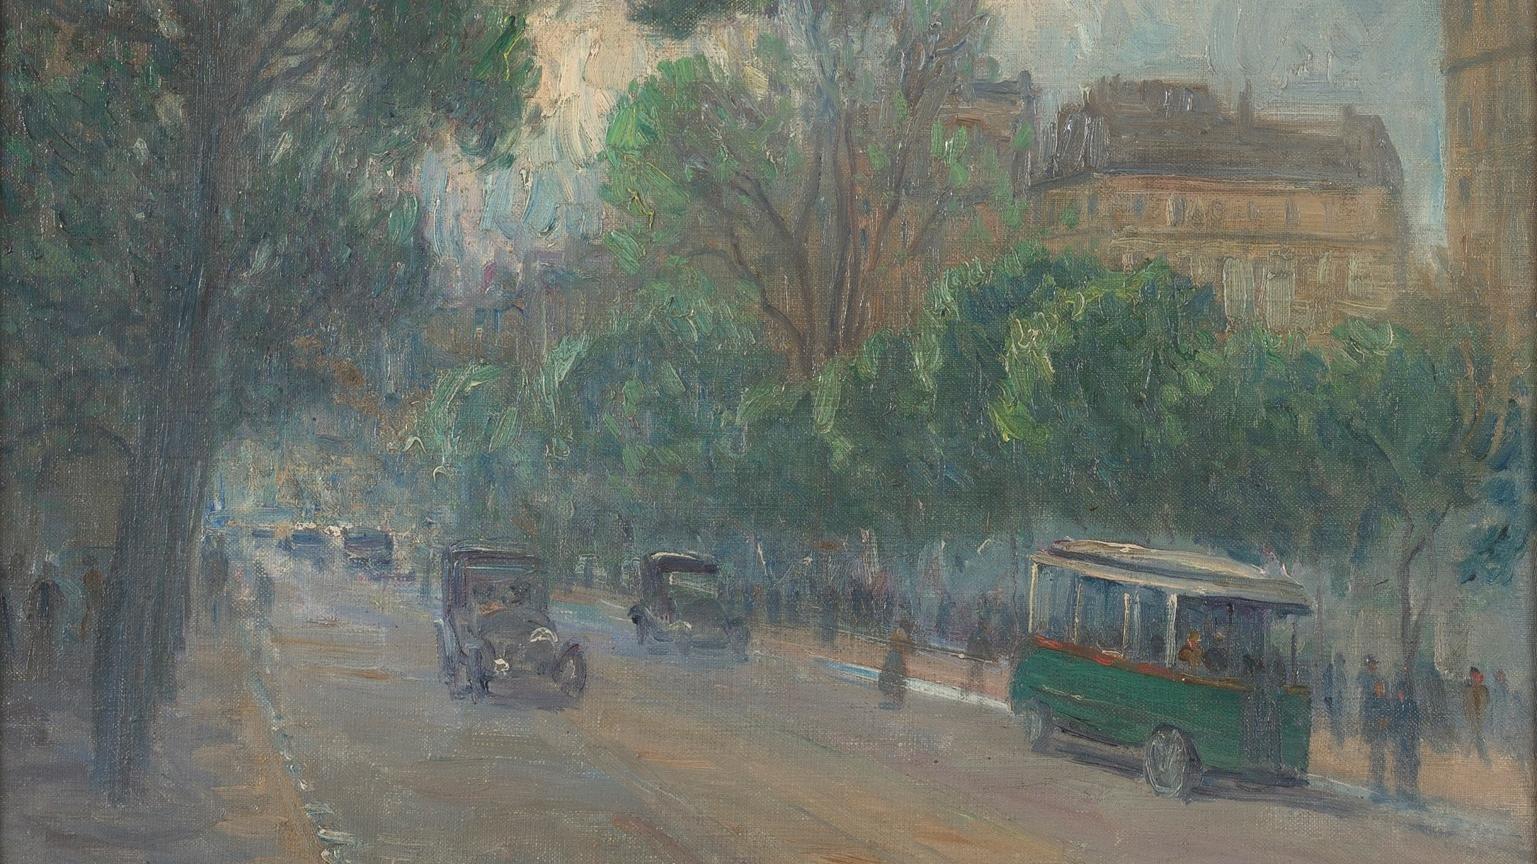 Pintura que representa una avenida con árboles en sus costados y vehículos circulando